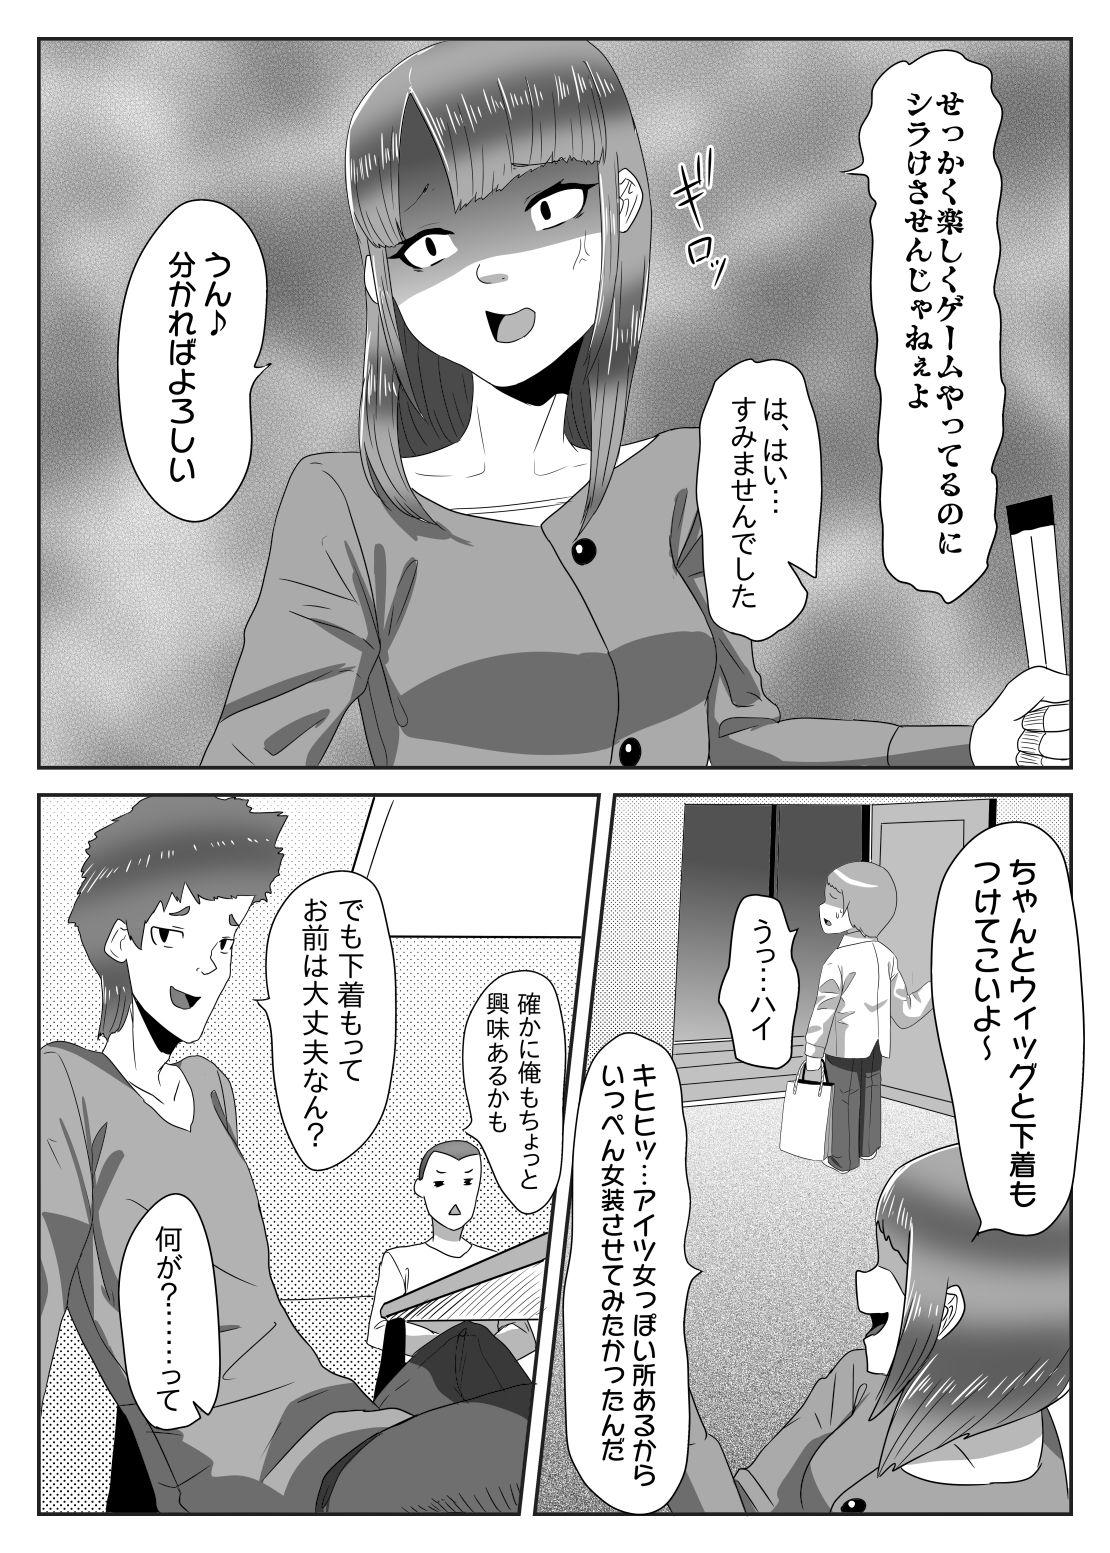 Gritona Batsu gēmu de josō sanpo sa se rarete itara ikemen futanari musume ni tasuke raremashita - Original Banho - Page 5